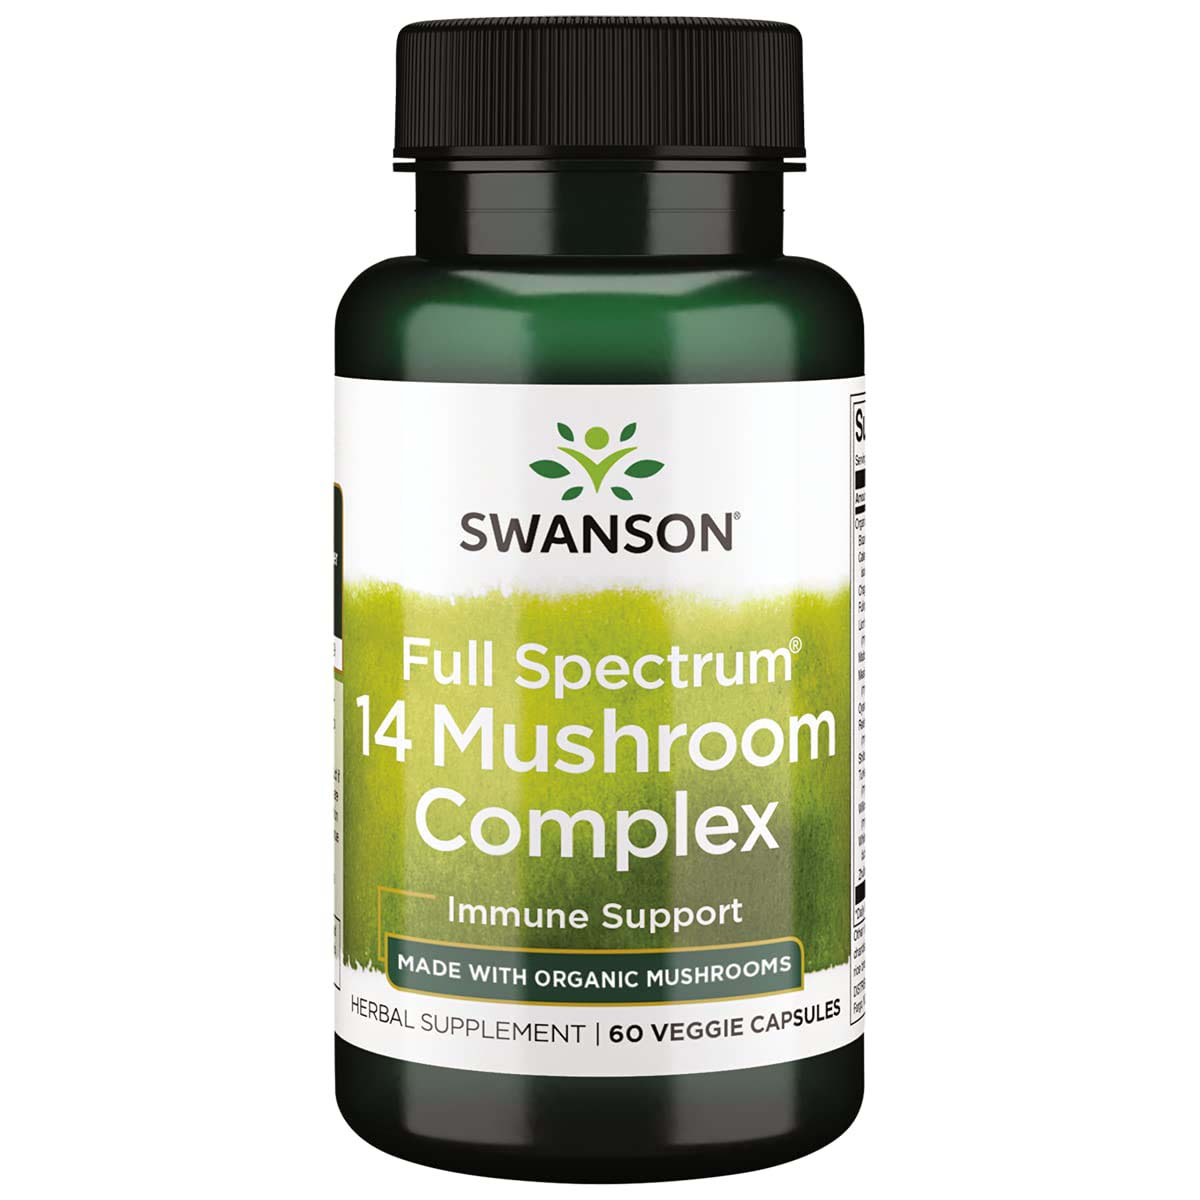 Swanson Full Spectrum 14 Mushroom Complex, 60 Veggie Capsules